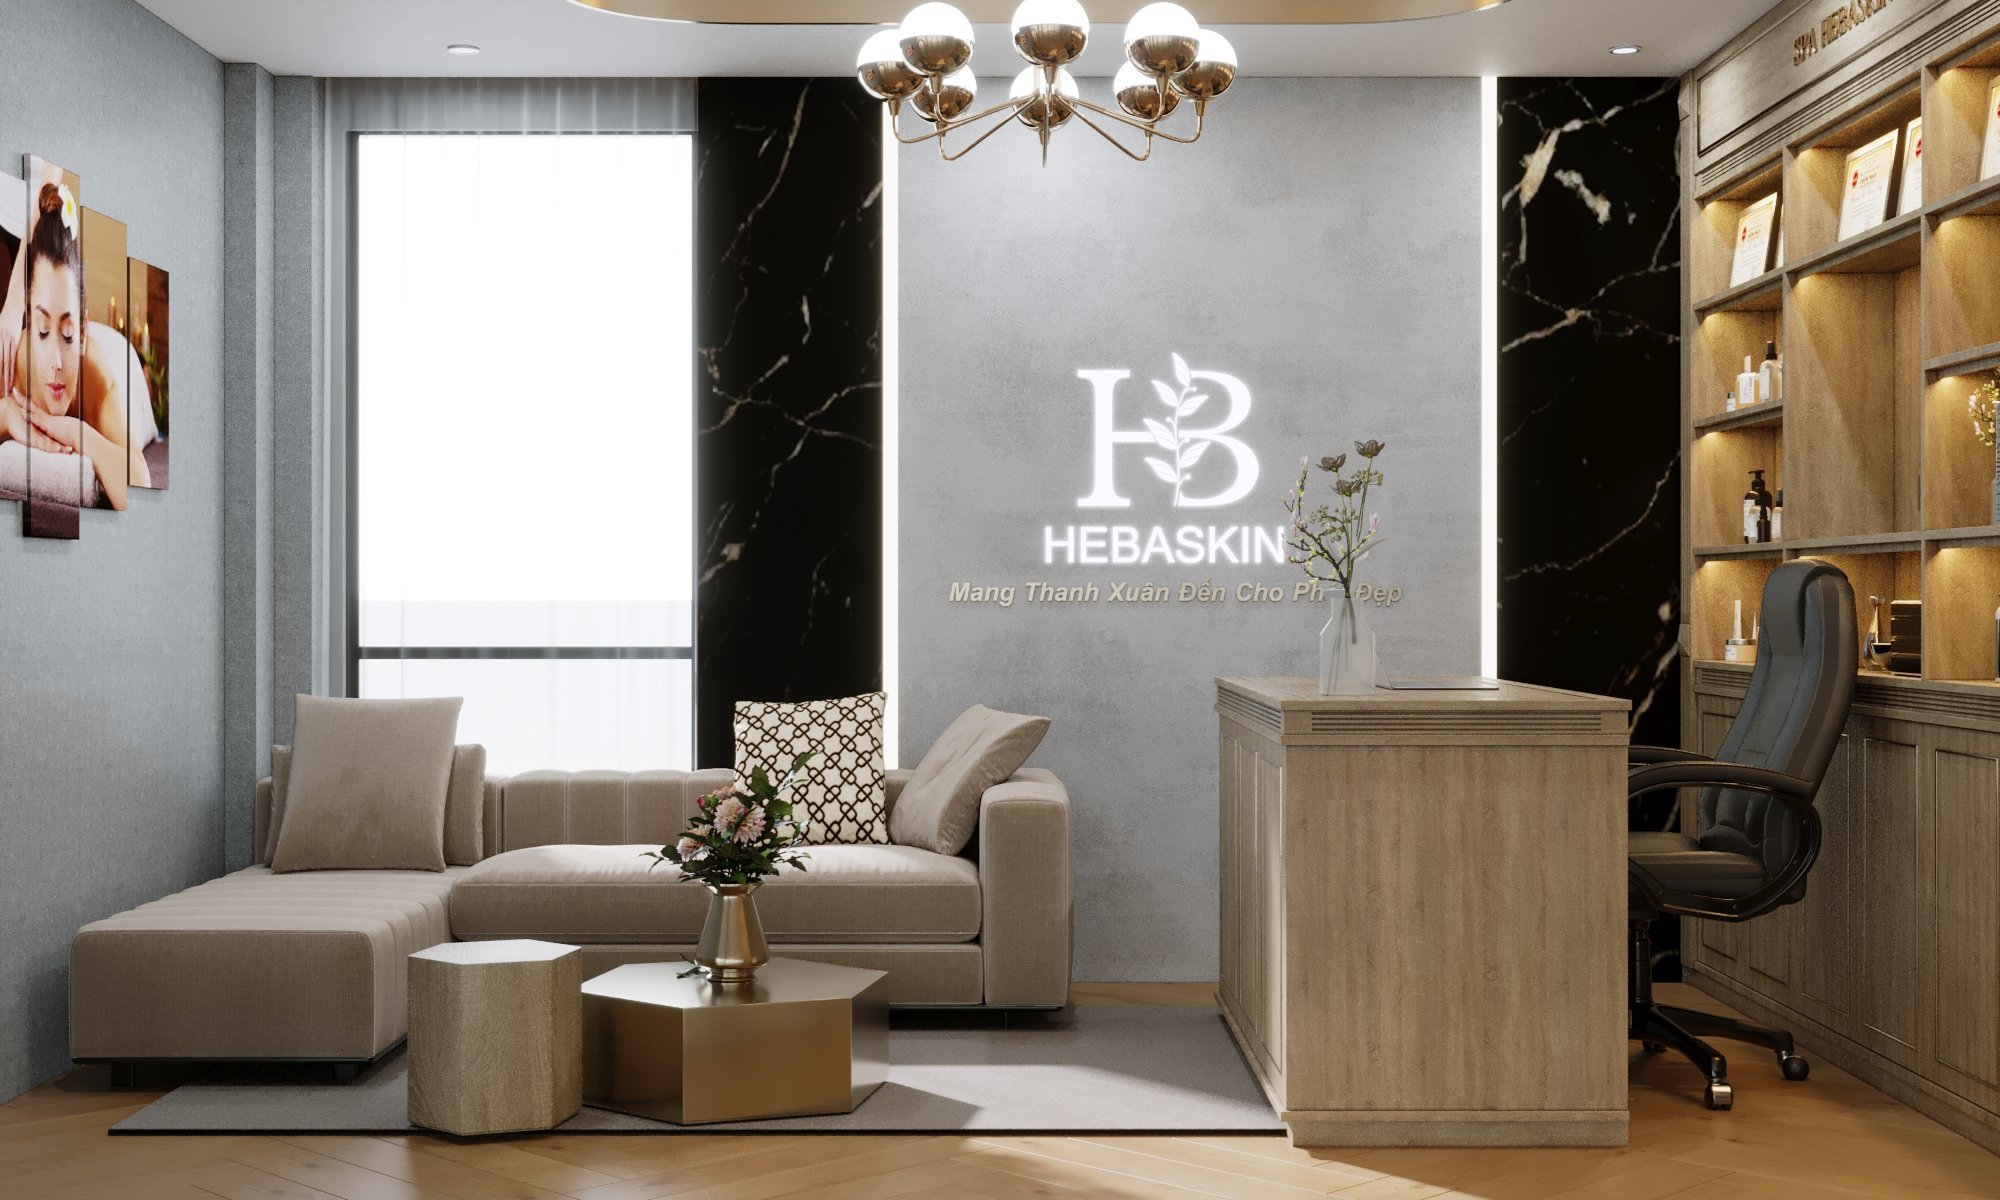 Thiết kế nội thất Spa tại Hà Nội Spa HeBaSkin 1665526213 11